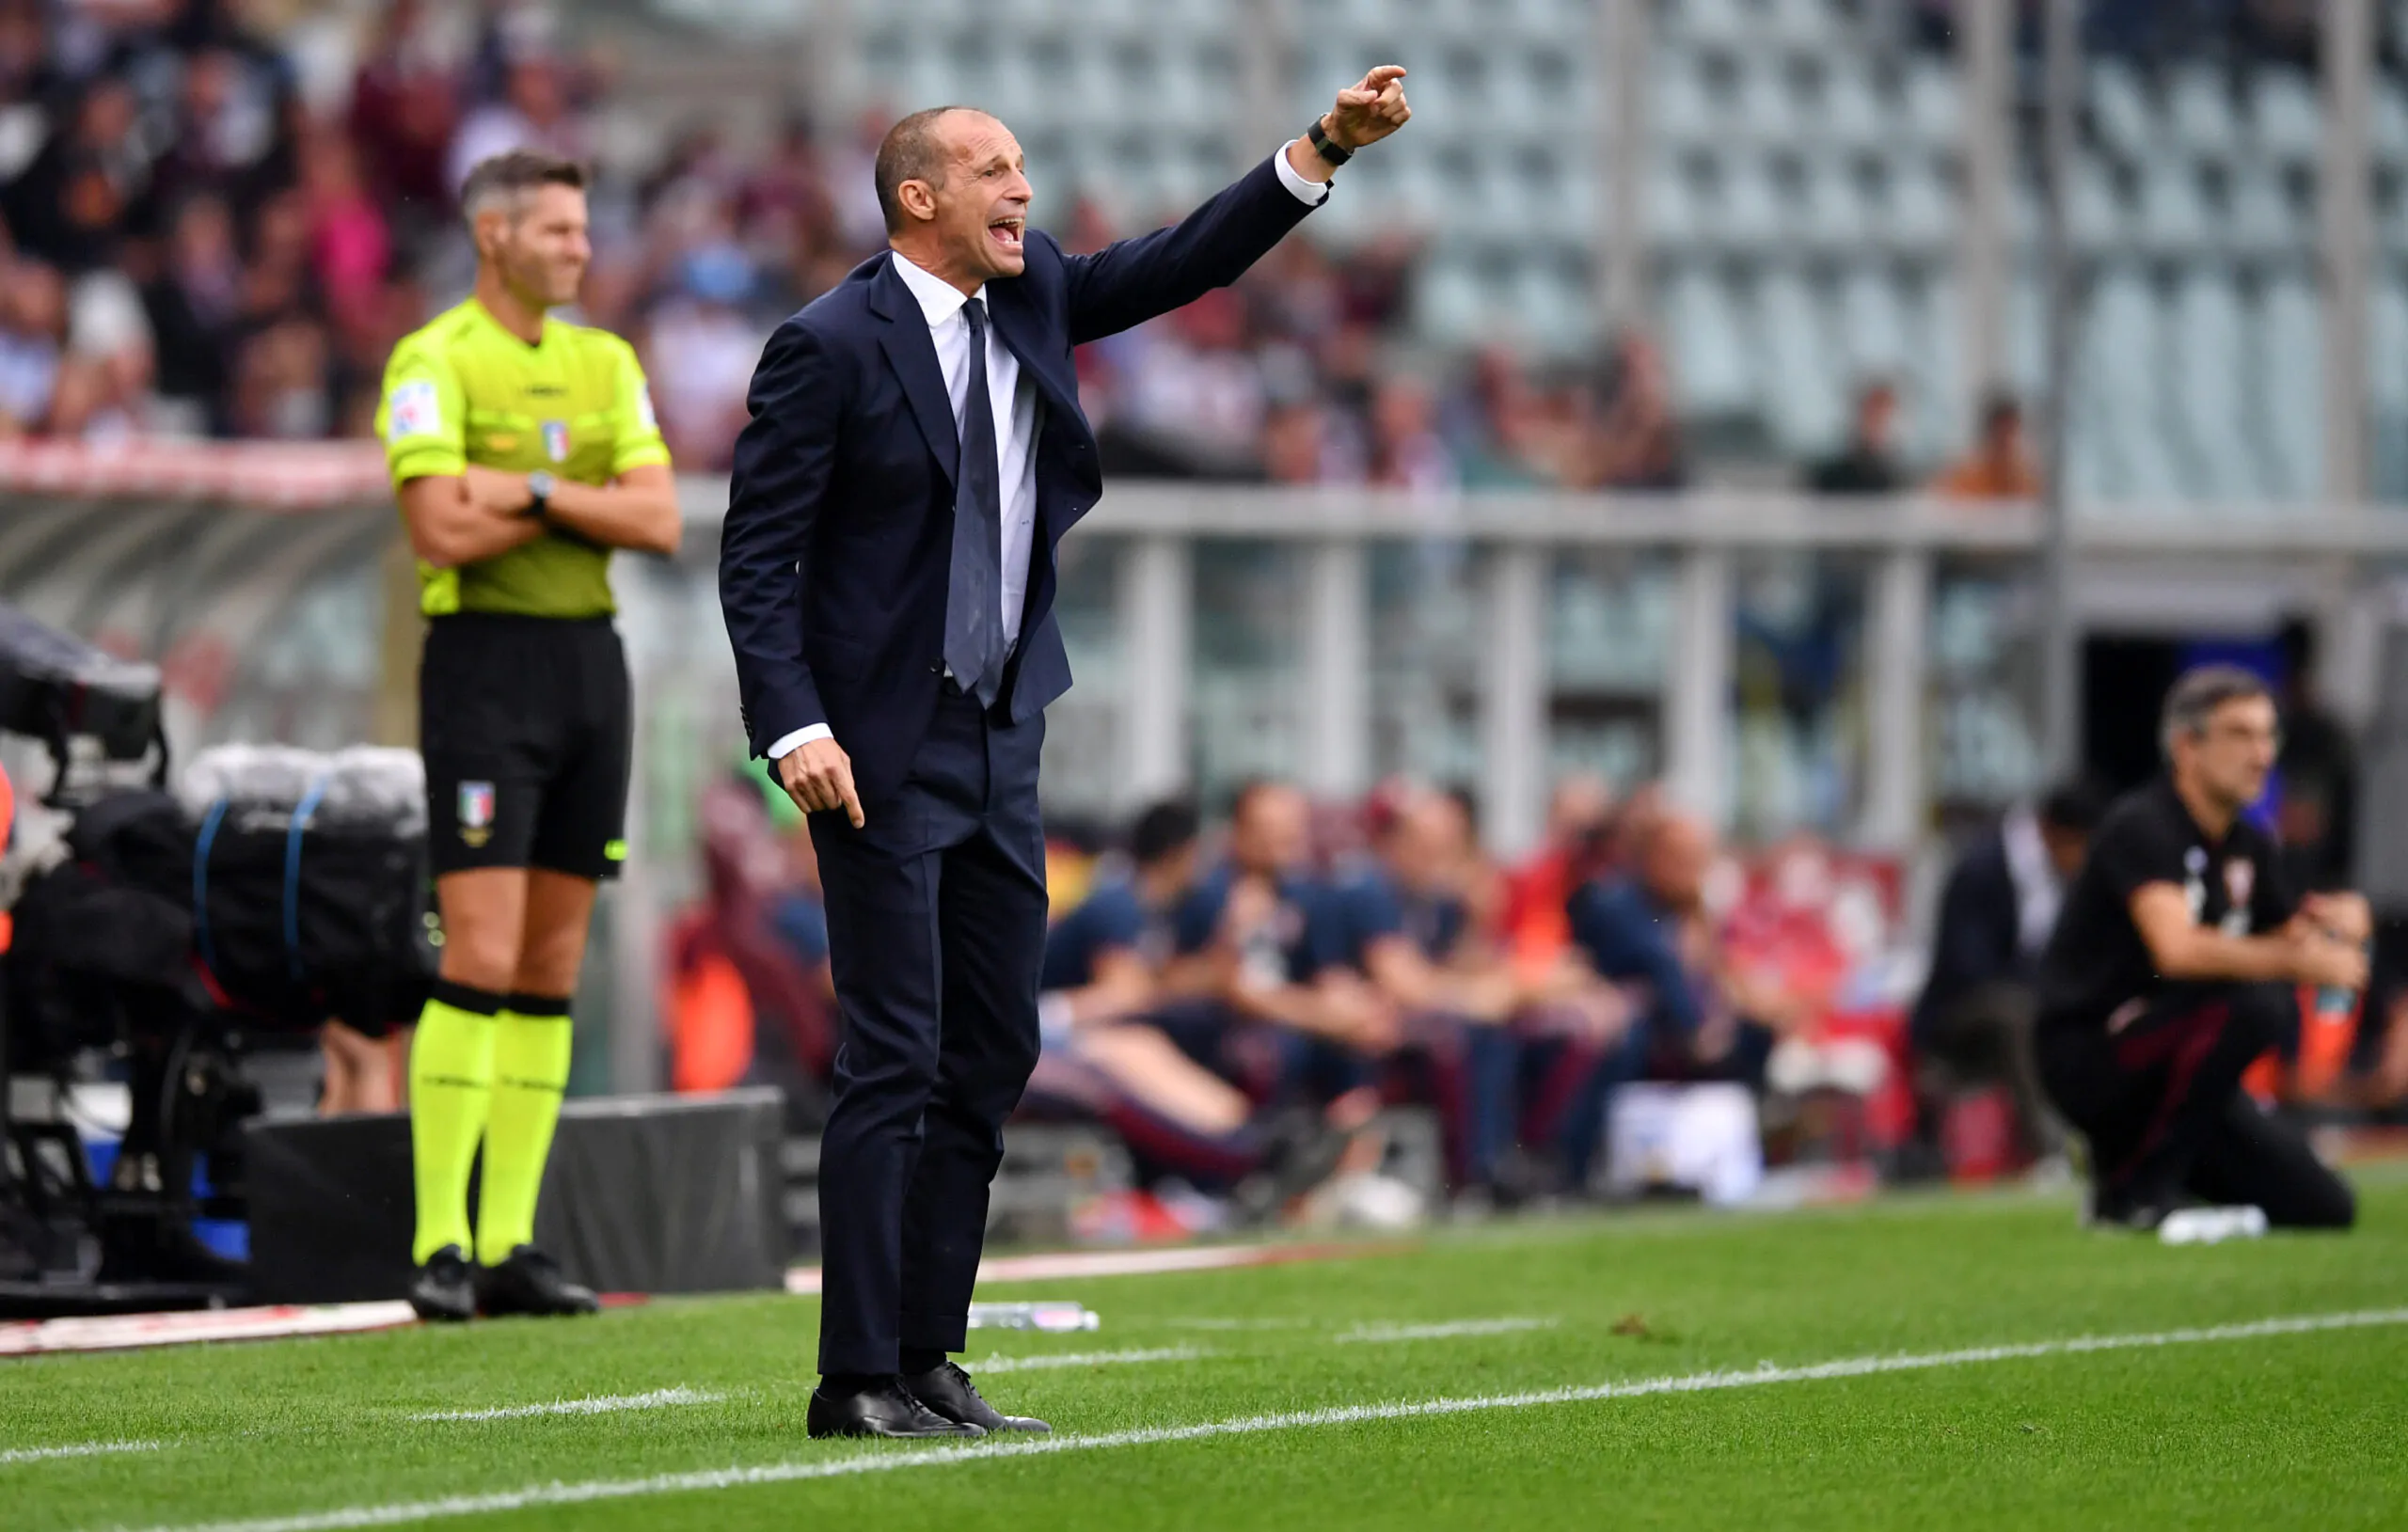 Che bordata ad Allegri: “La Juventus dovrebbe vincere e convincere”